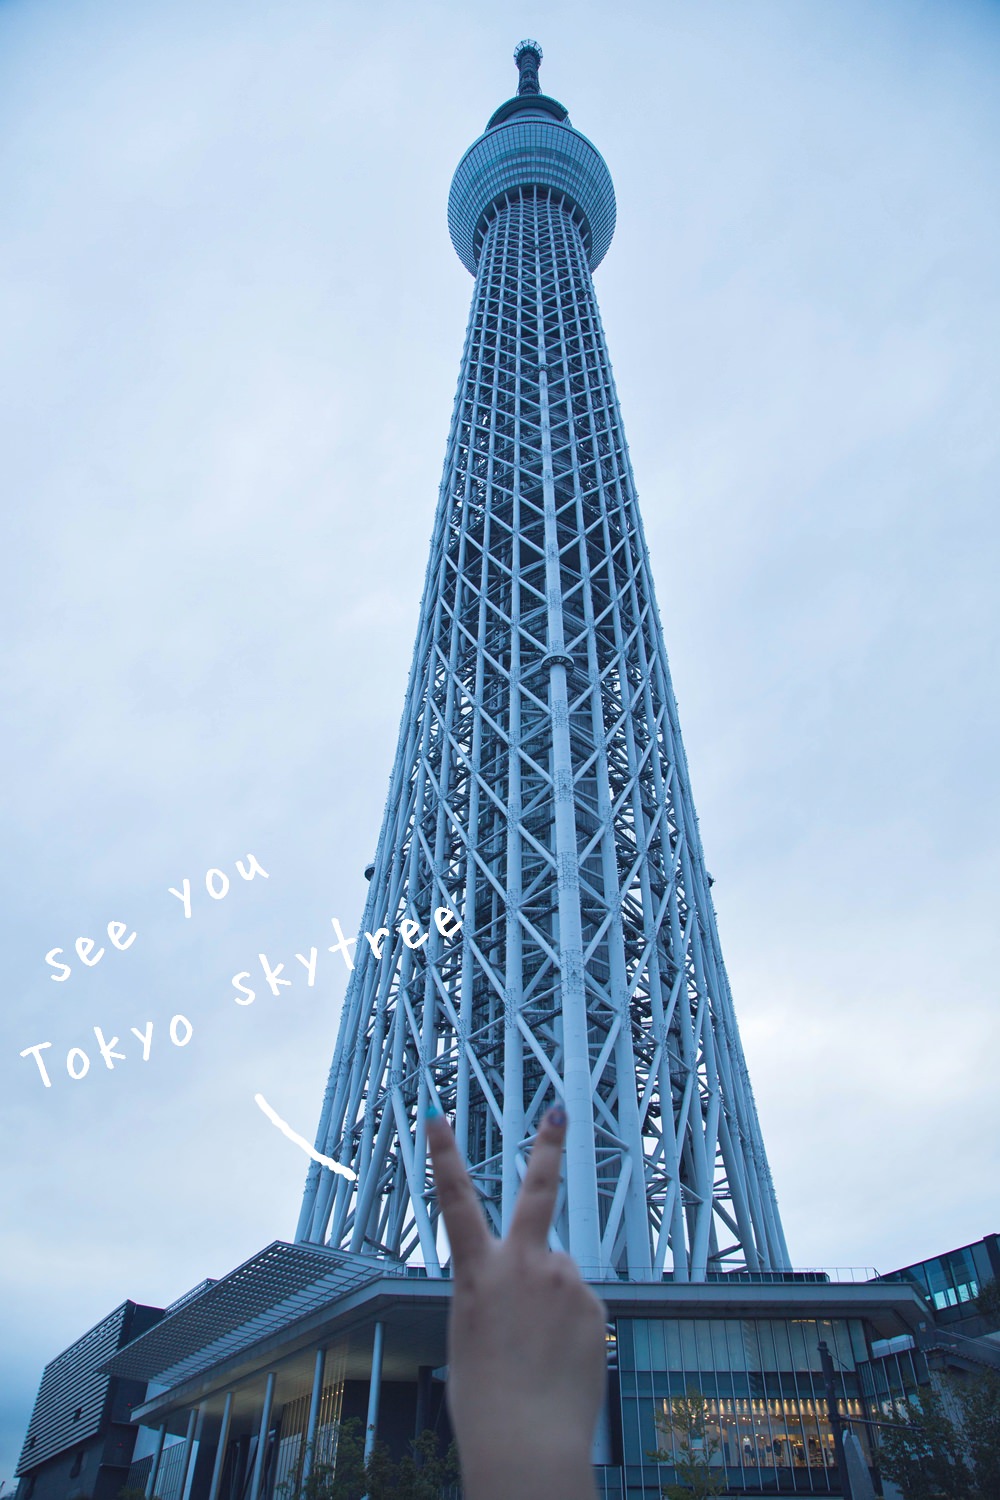 晴空塔,東京晴空塔,tokyo-skytree,晴空塔夜景,天空樹